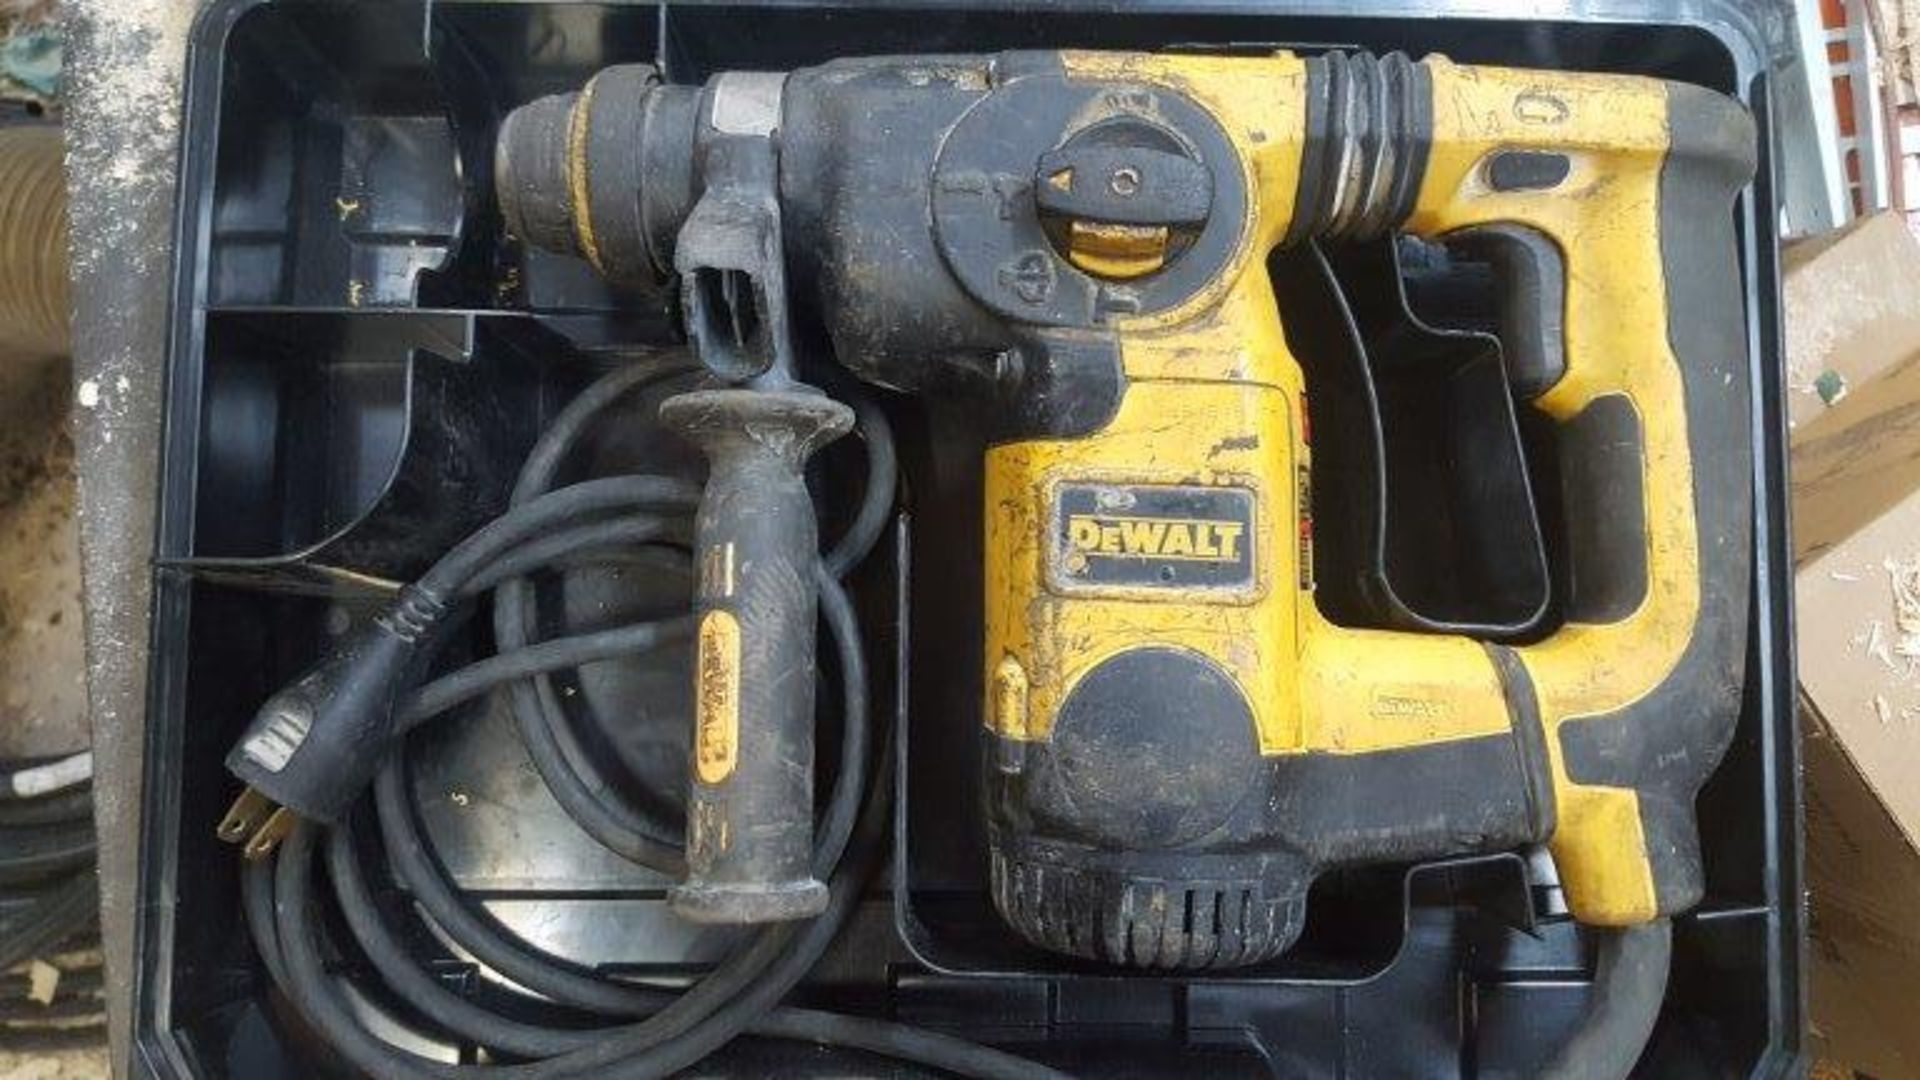 DeWAlt D25323 hammer drill with case